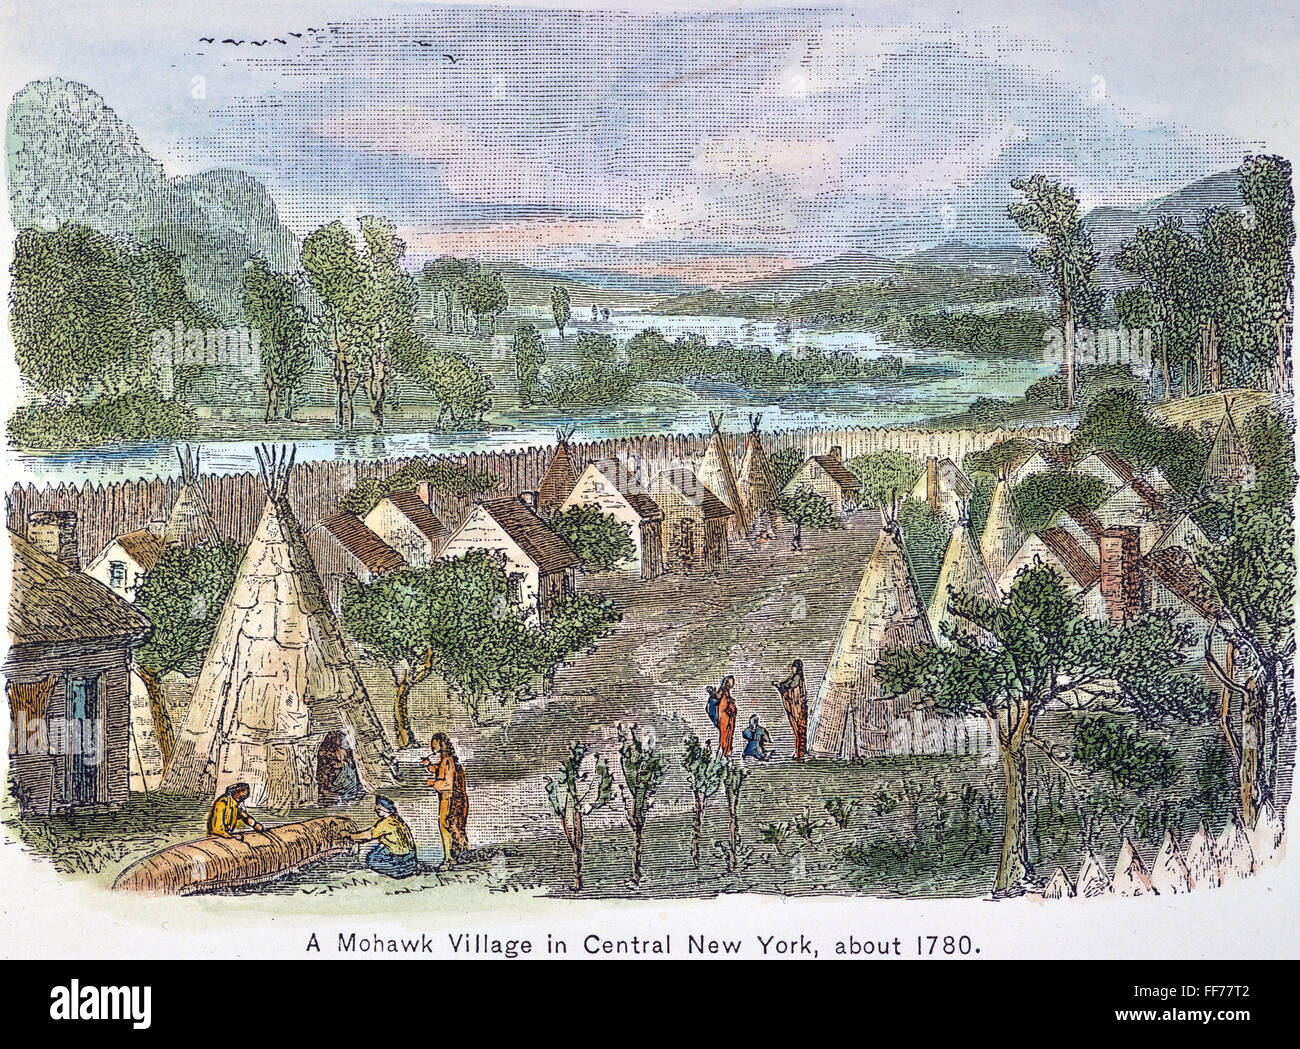 MOHAWK DORF, 1780. NUM Mohawk Indianer Dorf im Zentrum von New York, c1780. Kupferstich, 19. Jahrhundert. Stockfoto